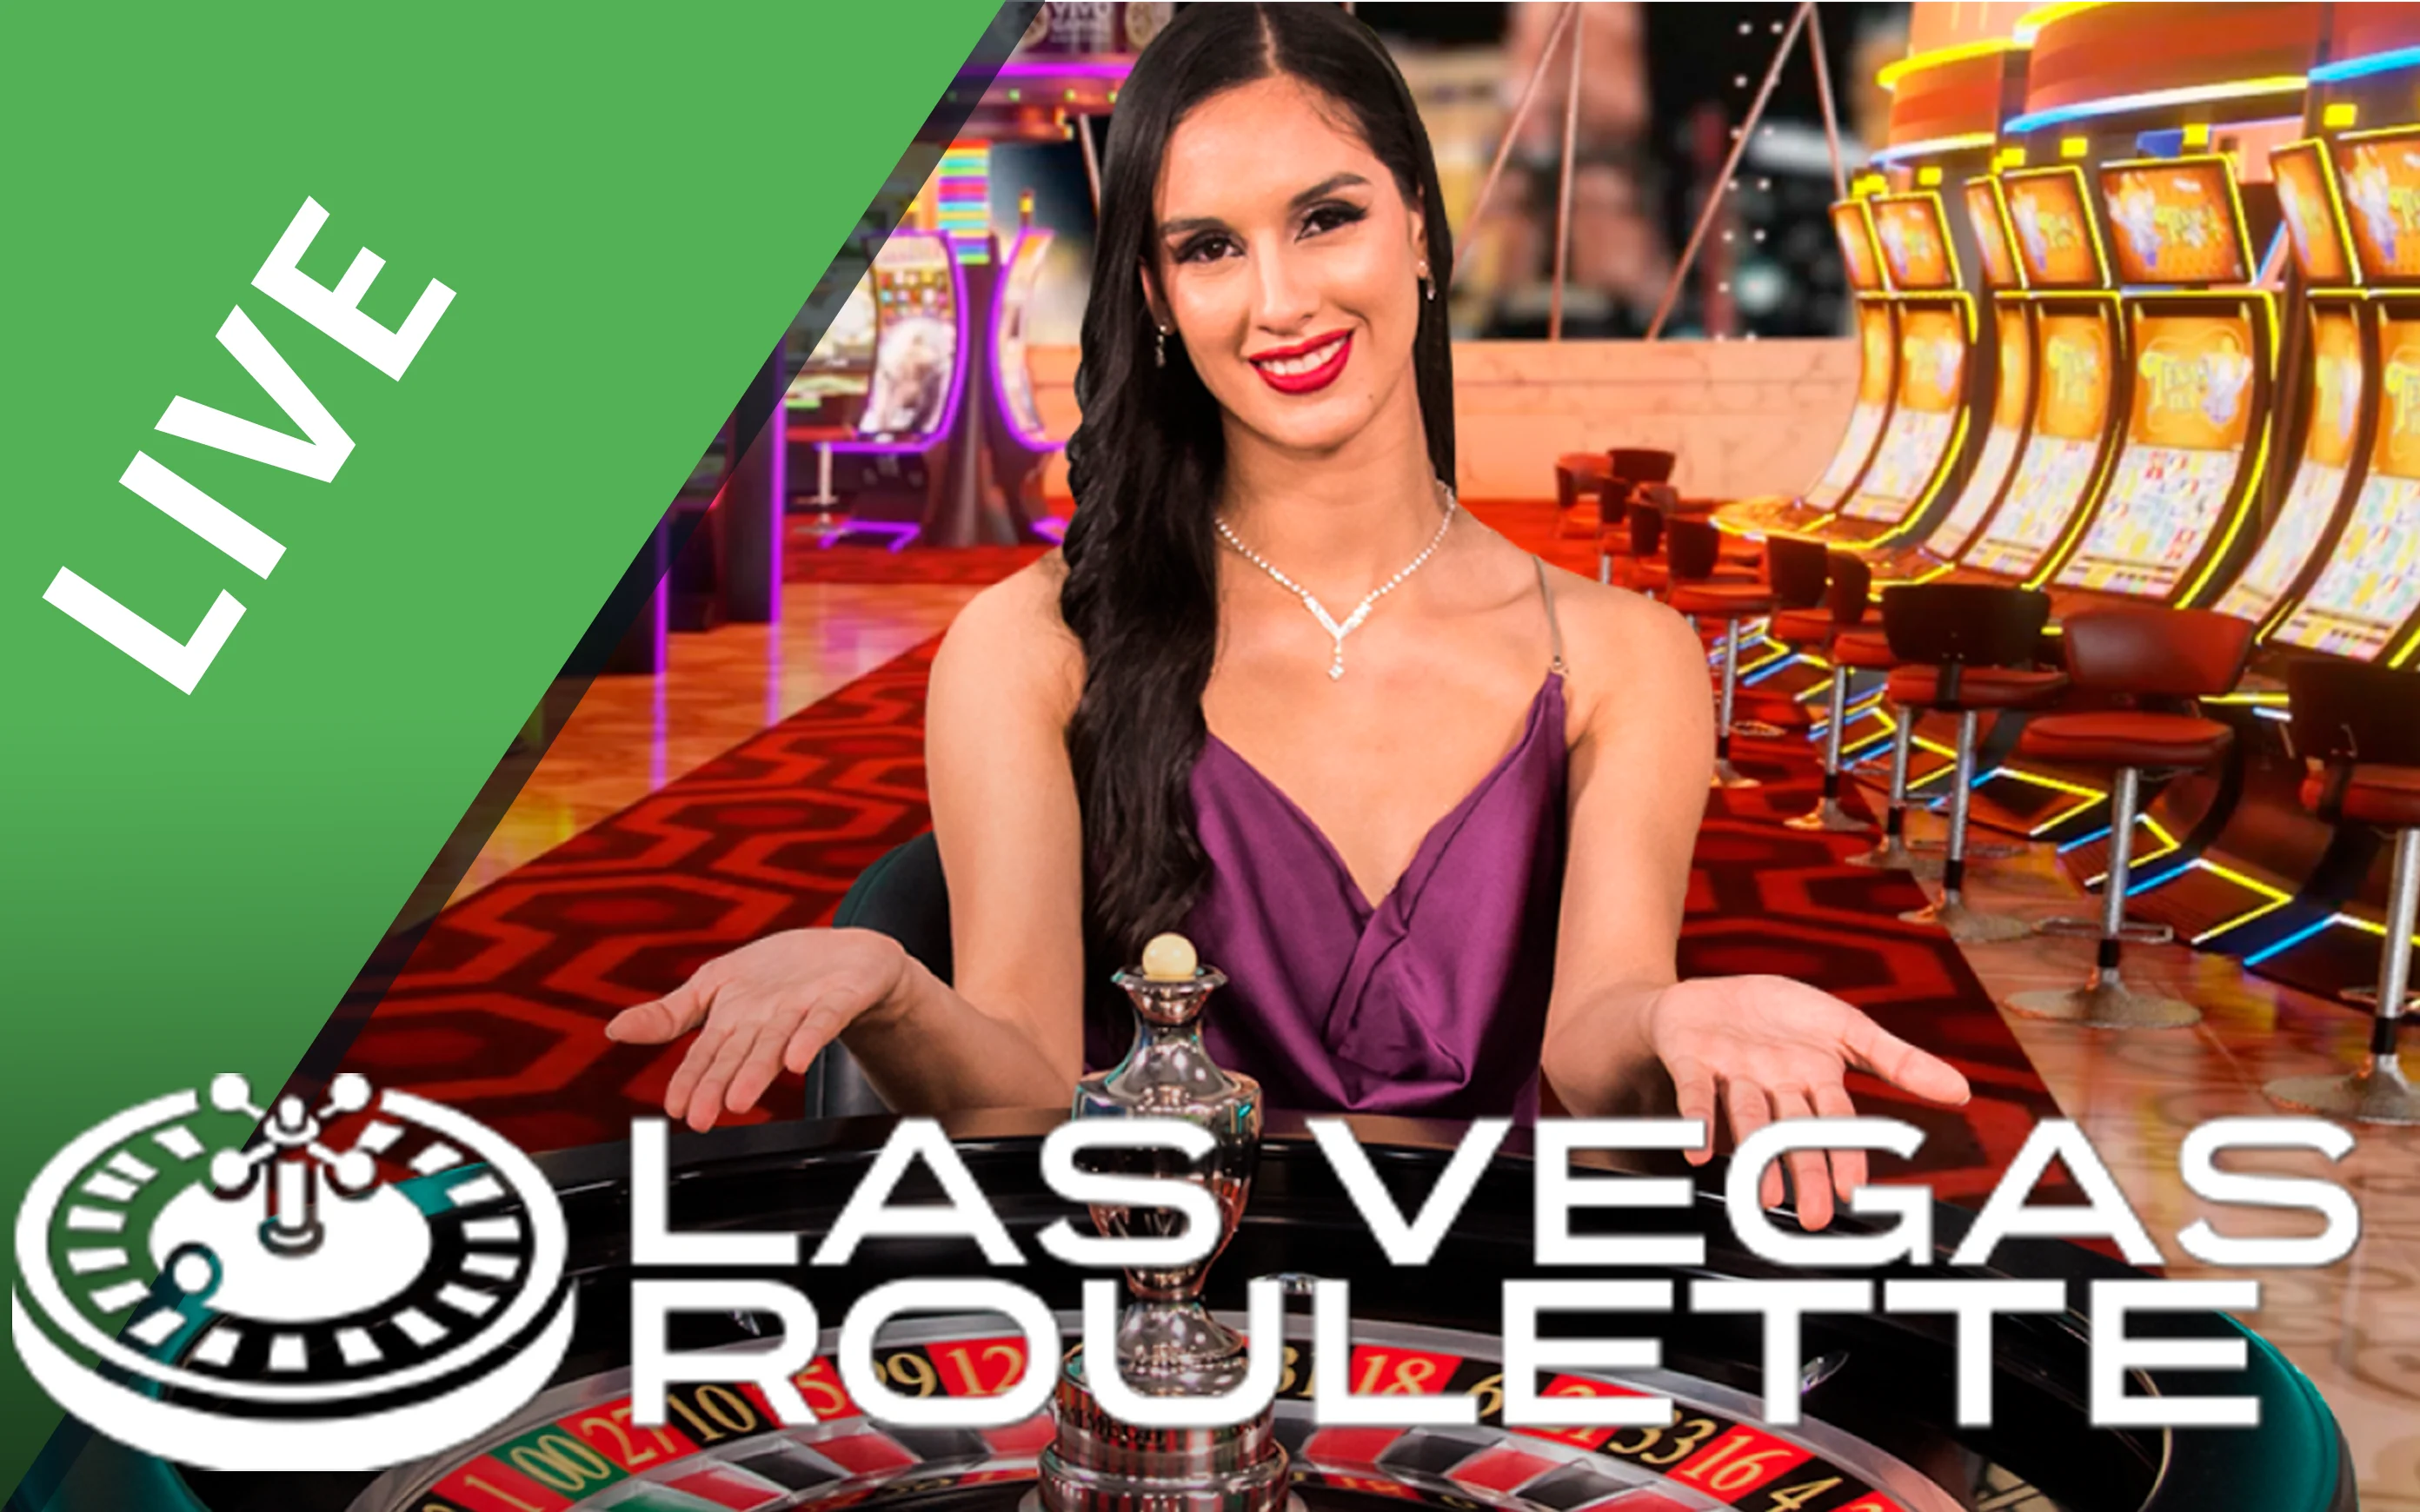 Starcasino.be online casino üzerinden Las Vegas Roulette oynayın